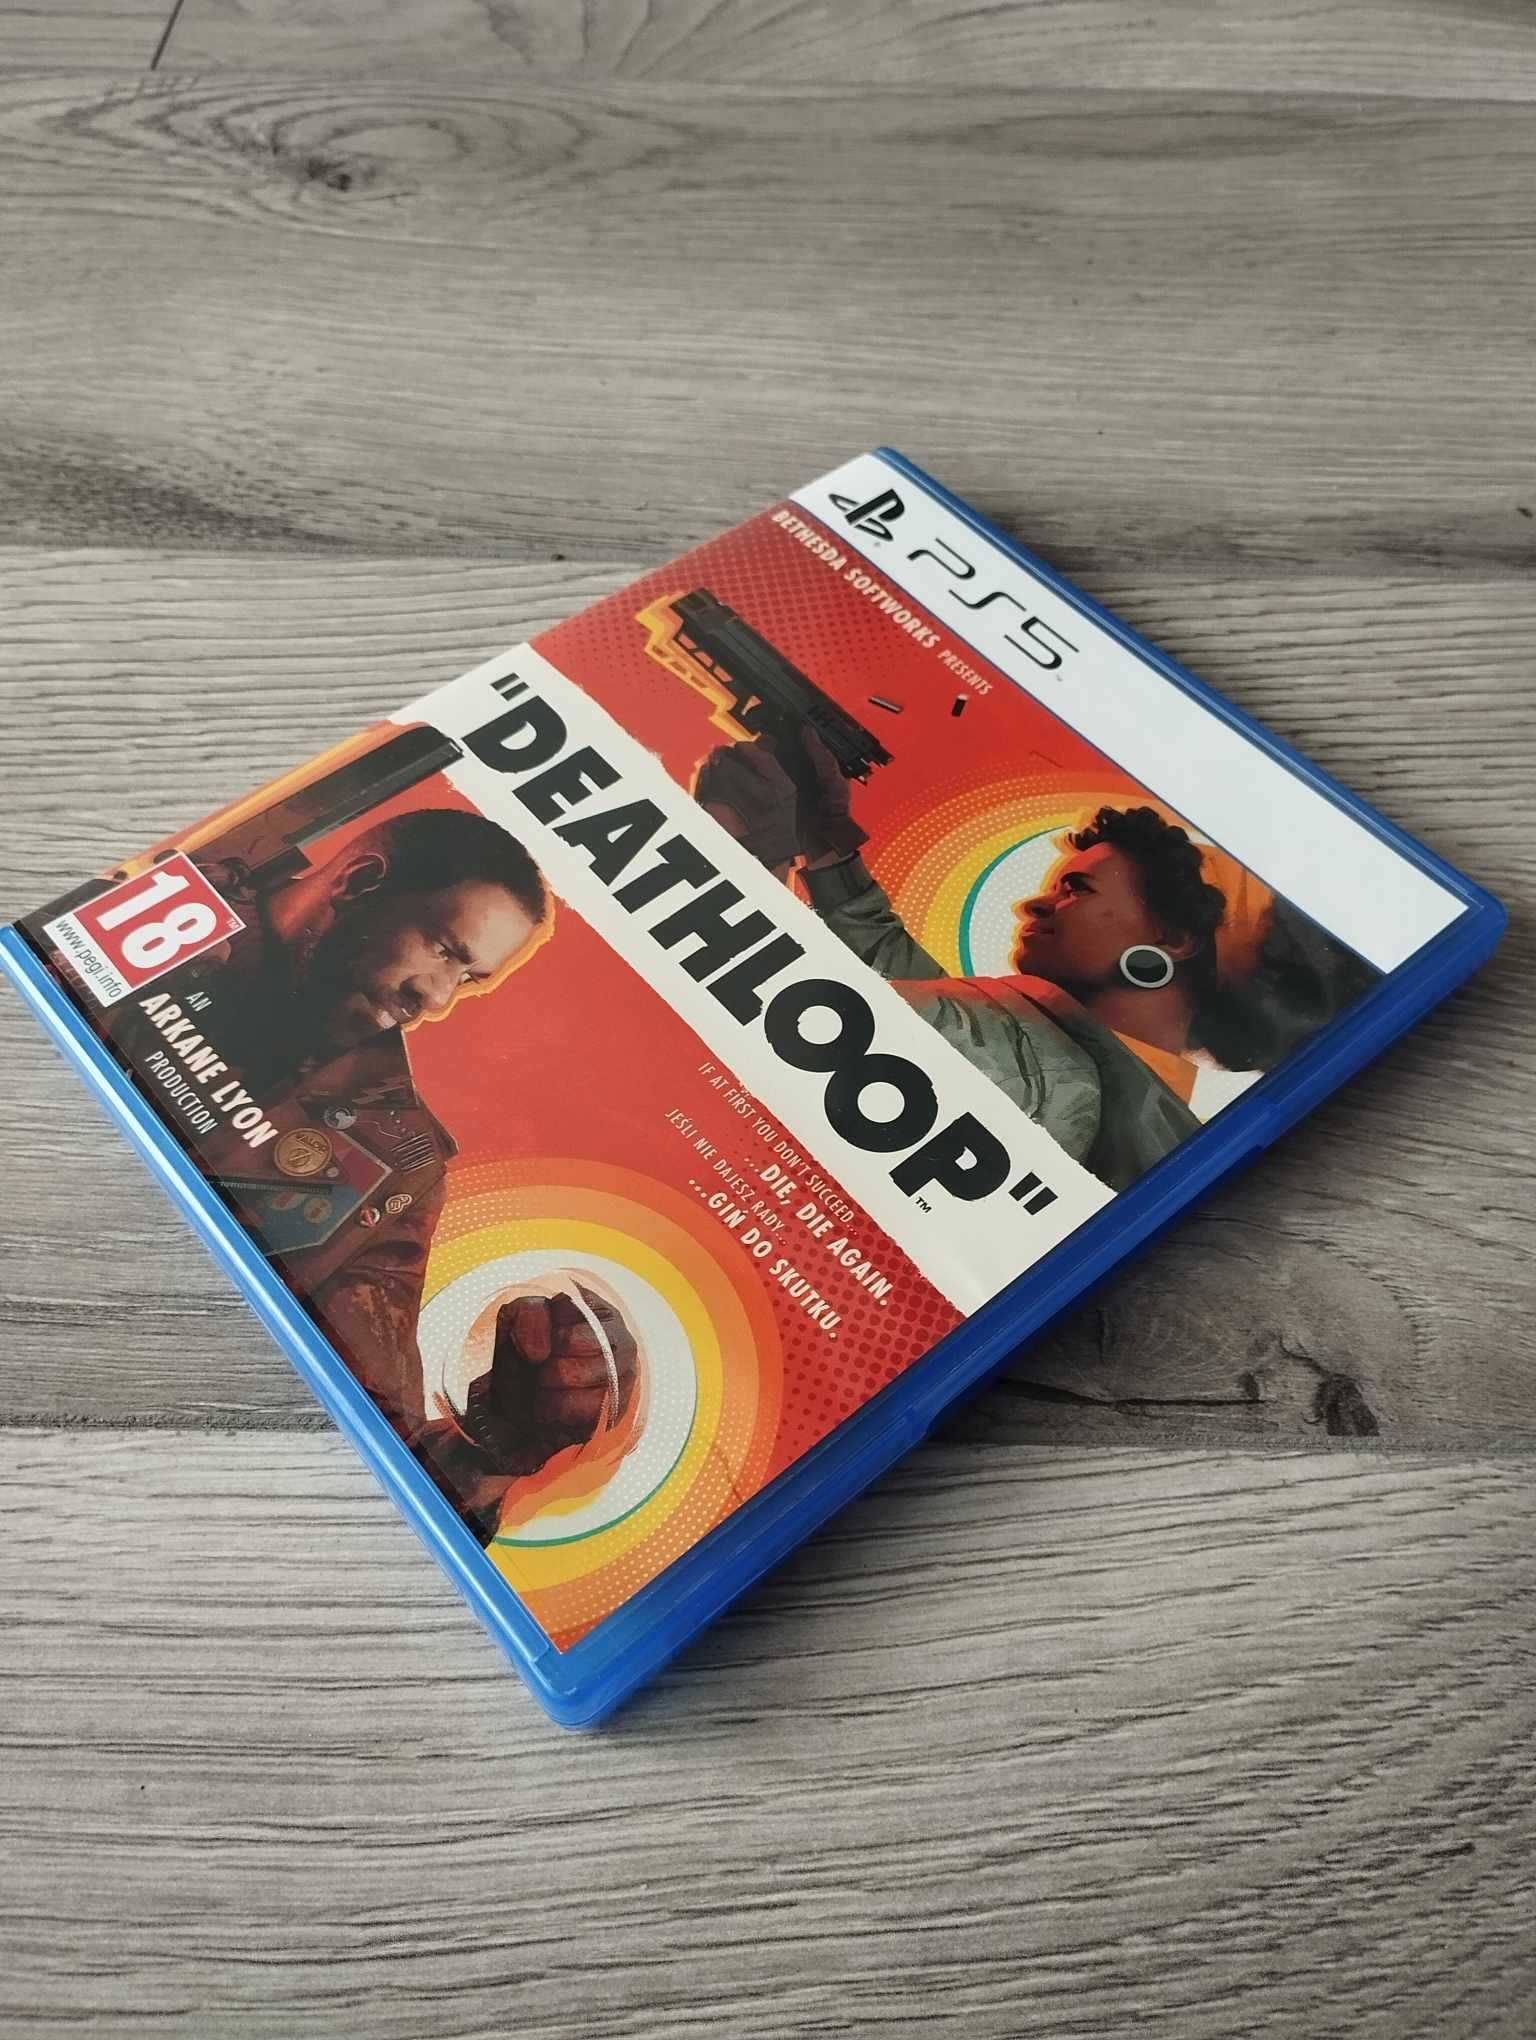 Gra Deathloop PS5 Playstation